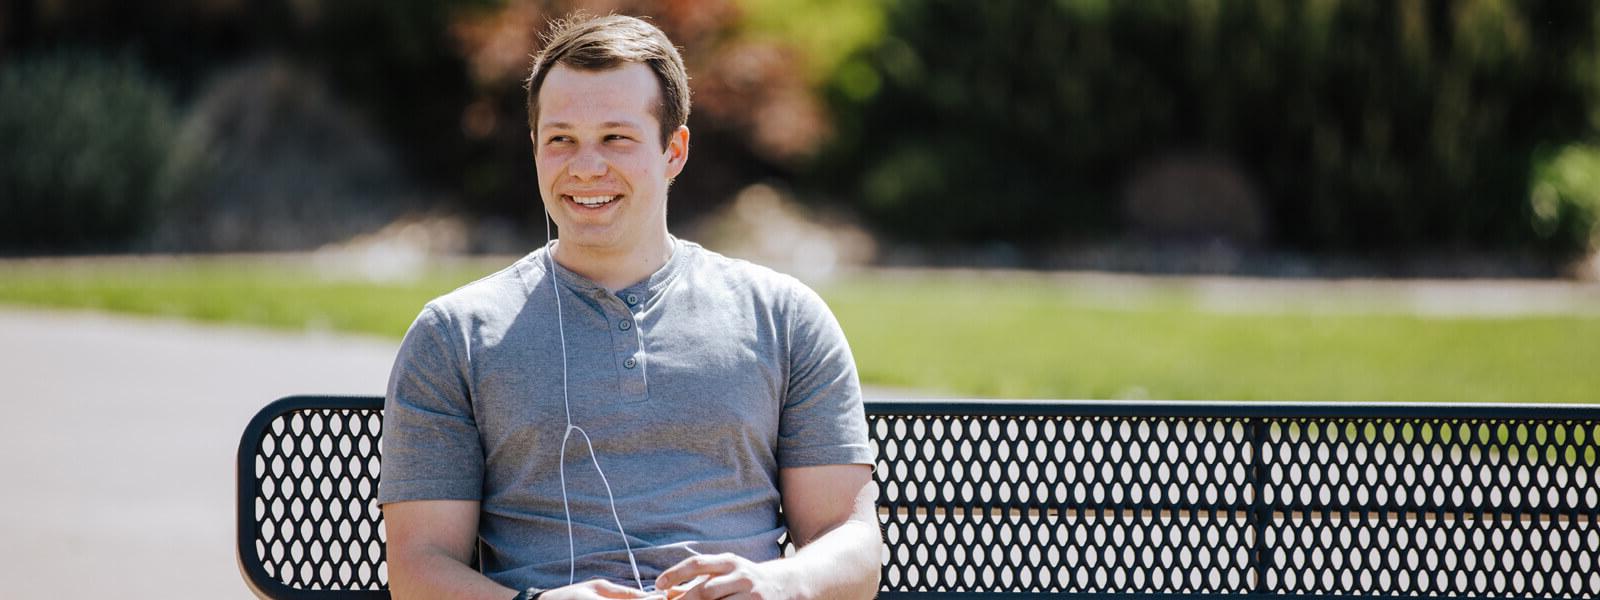 男学生戴着耳机坐在长凳上微笑